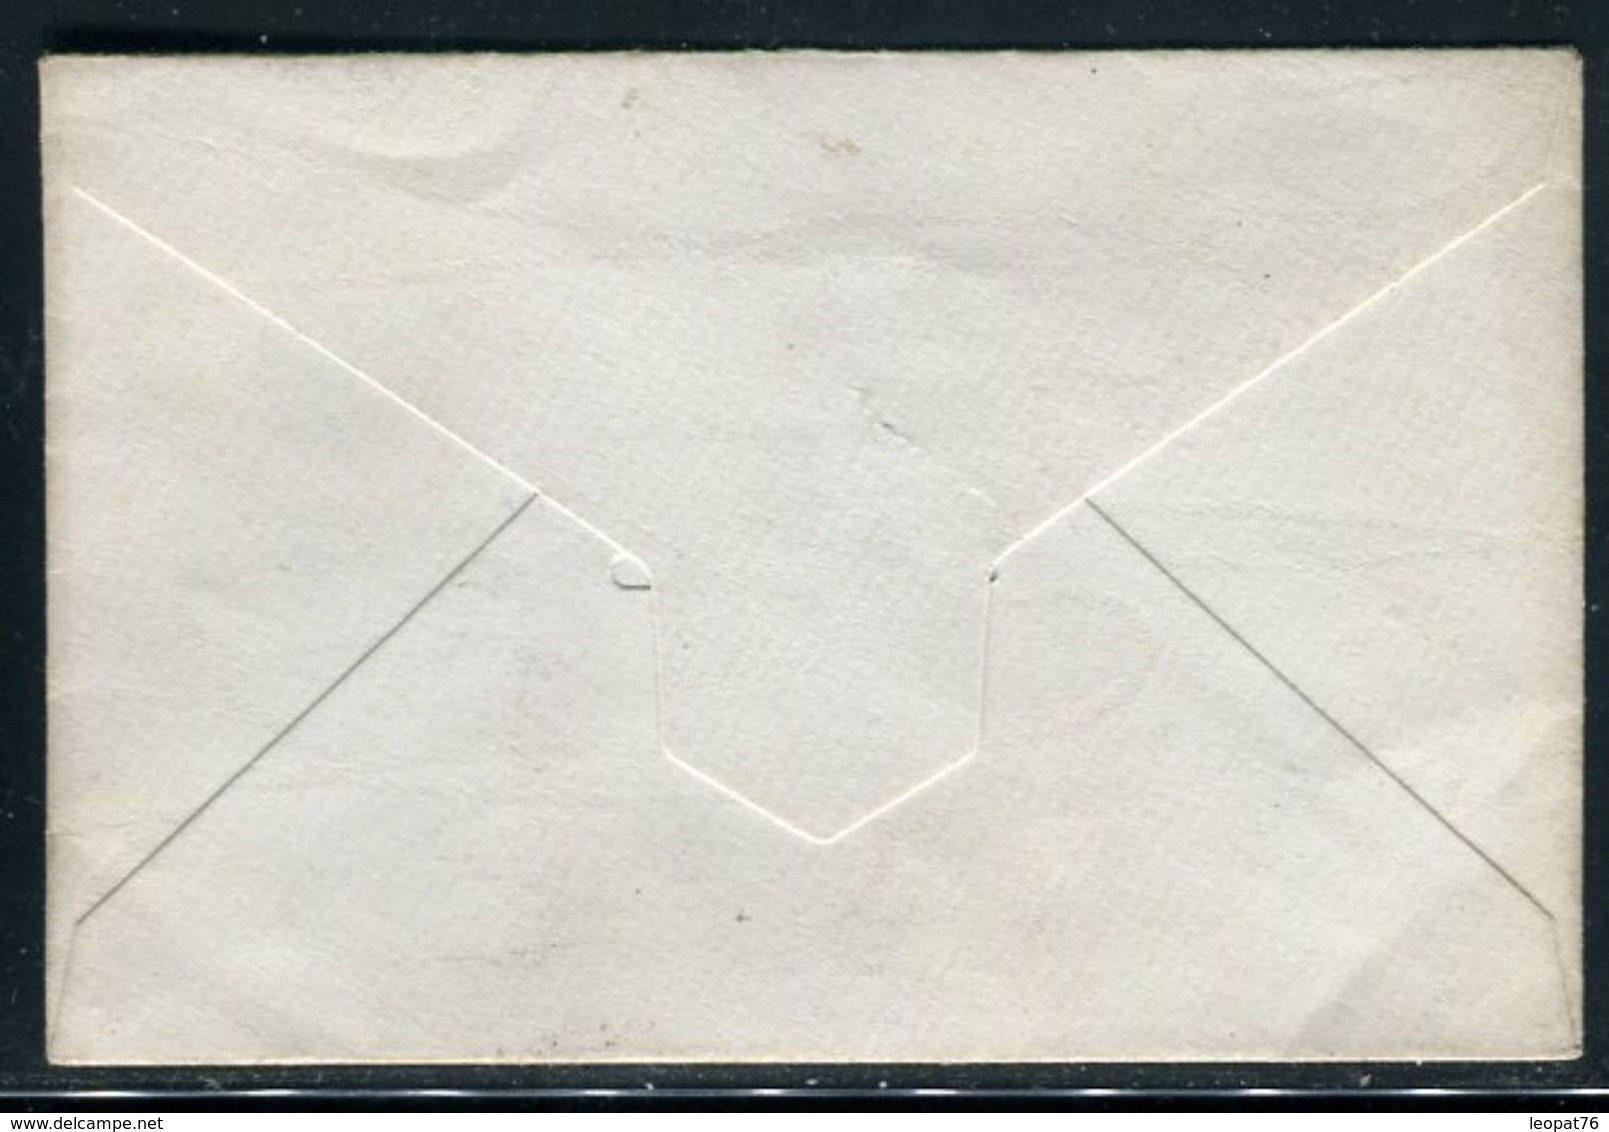 Egypte - Entier Postal Pour Le Caire En 1895 - Ref J 62 - 1866-1914 Khedivate Of Egypt